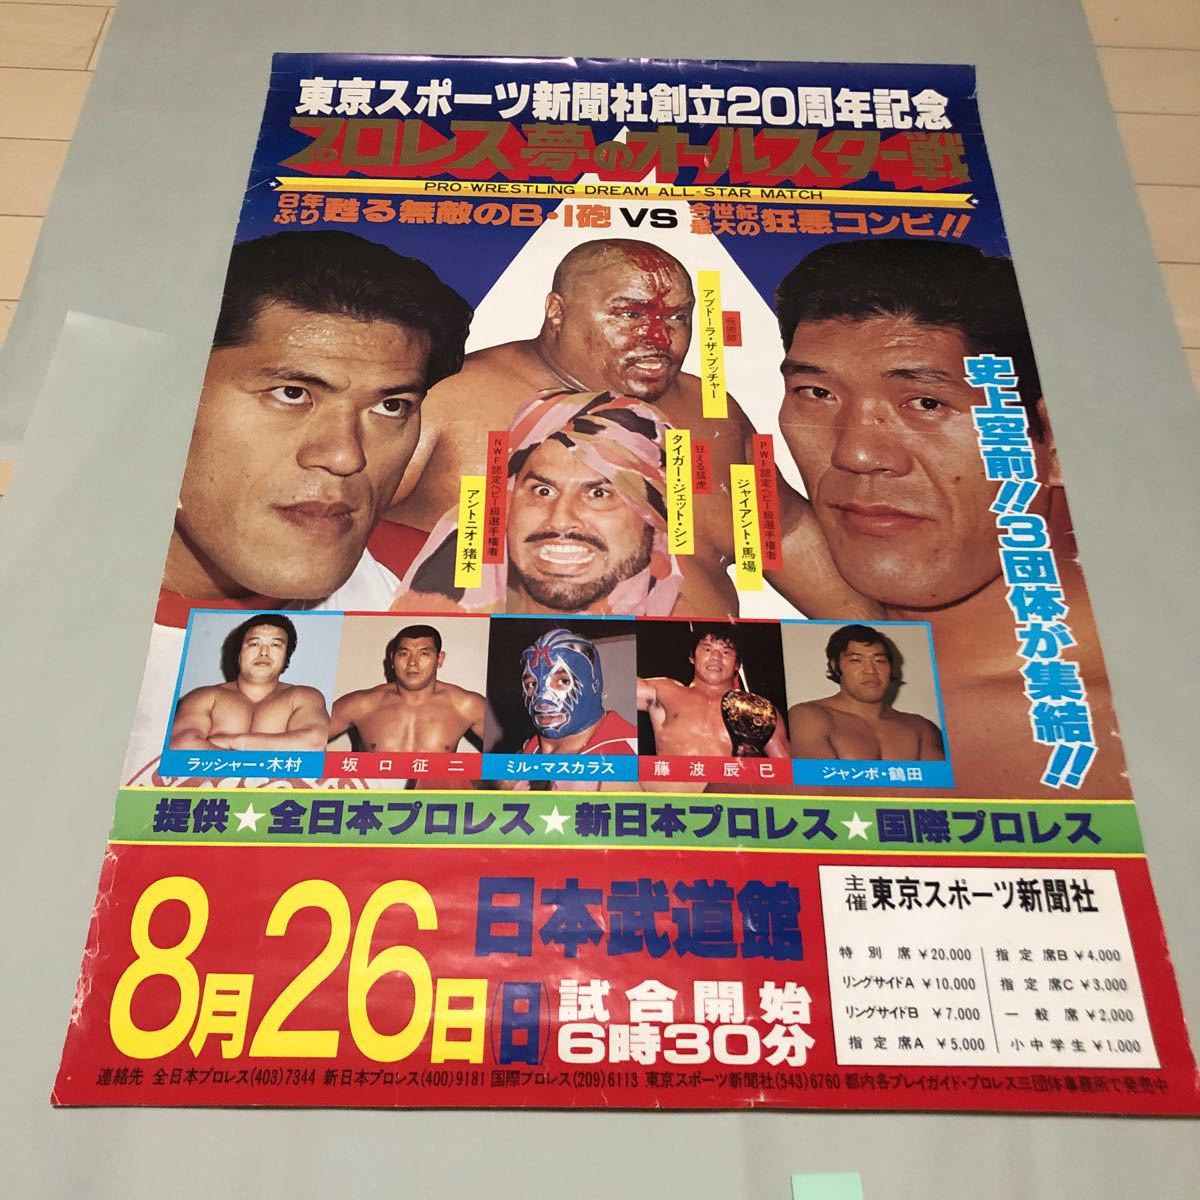 J684 東京スポーツ新聞社創立20周年記念プロレス夢のオールスター戦プロレスポスター 詳細は写真でご確認ください 簡易包装